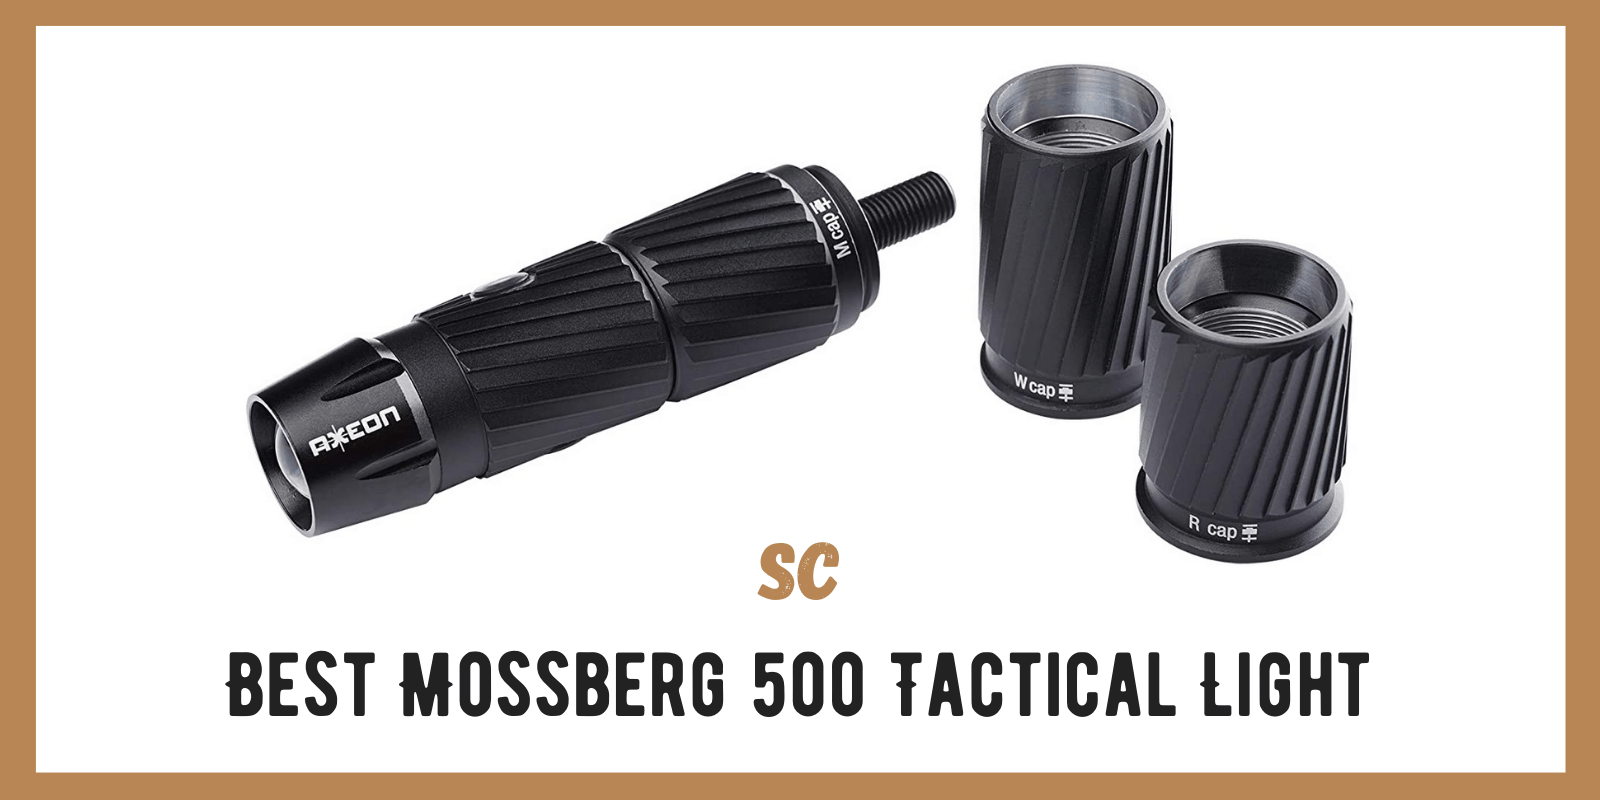 Best Mossberg 500 Tactical Light: Top 4 Picks